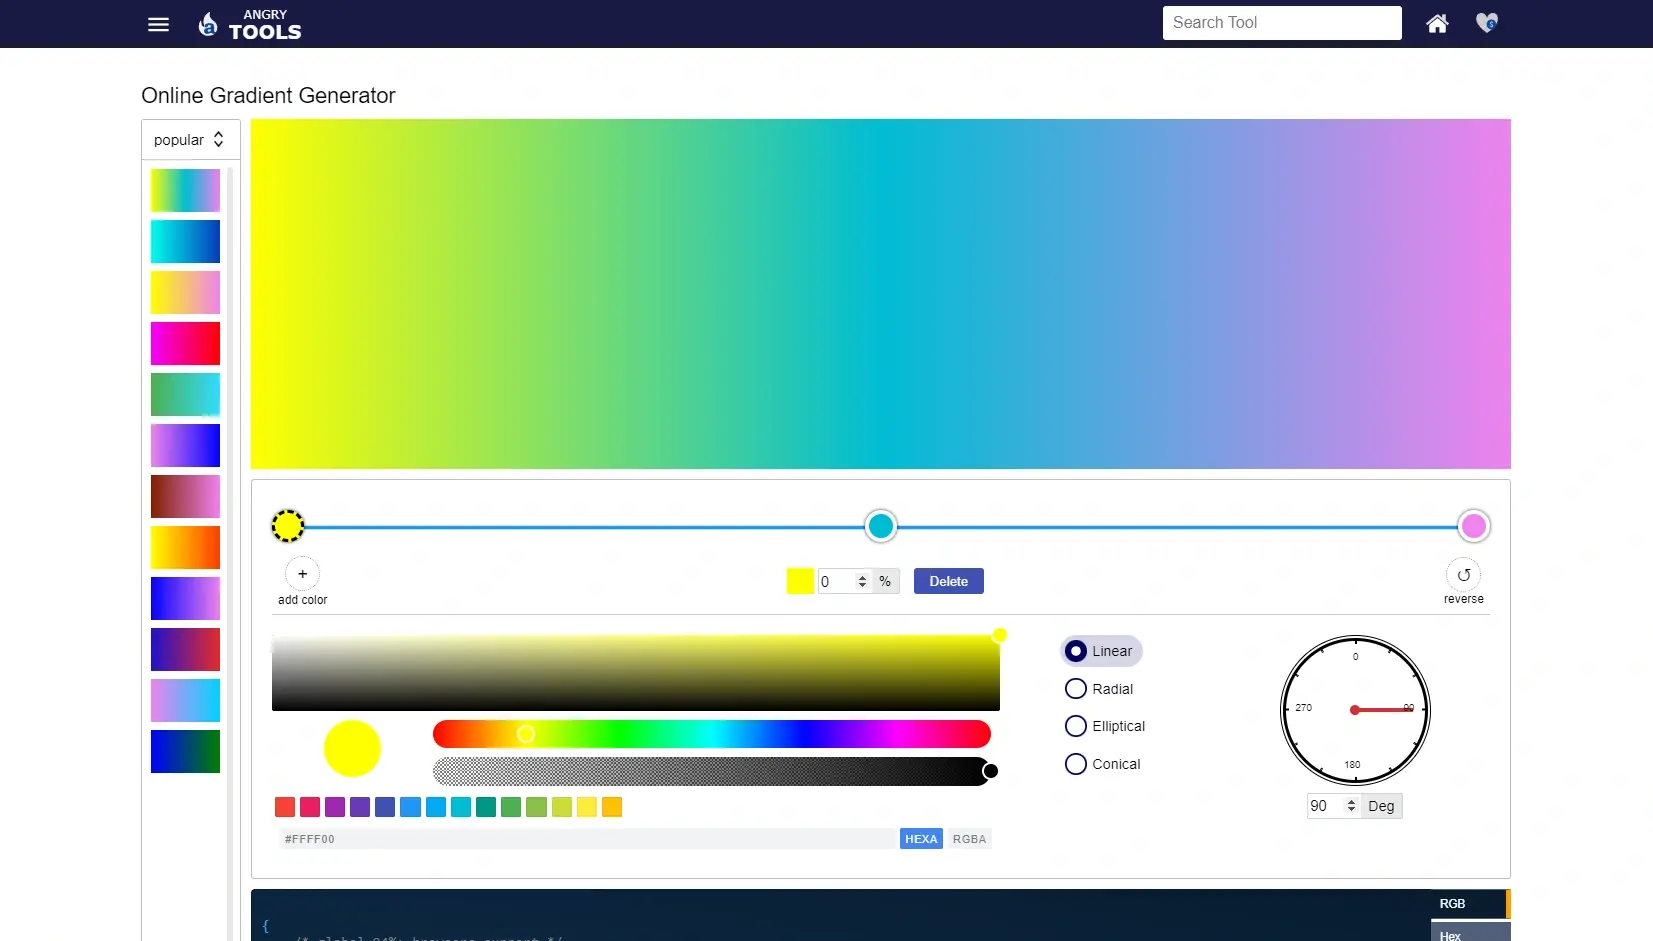 Blogduwebdesign outils design generateurs degrades couleurs en ligne angry tools